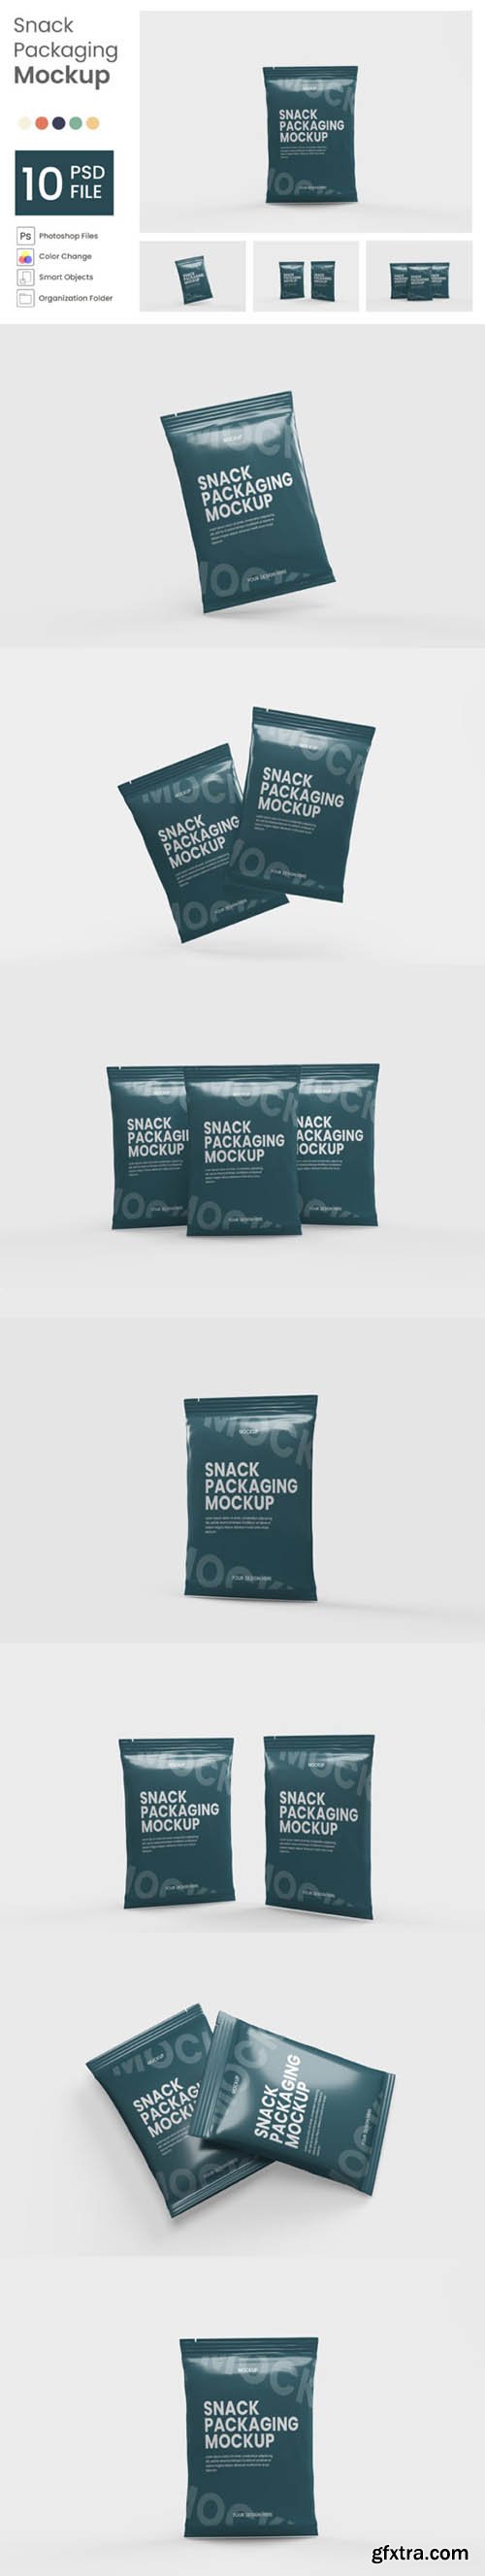 Snack Packaging Mockup